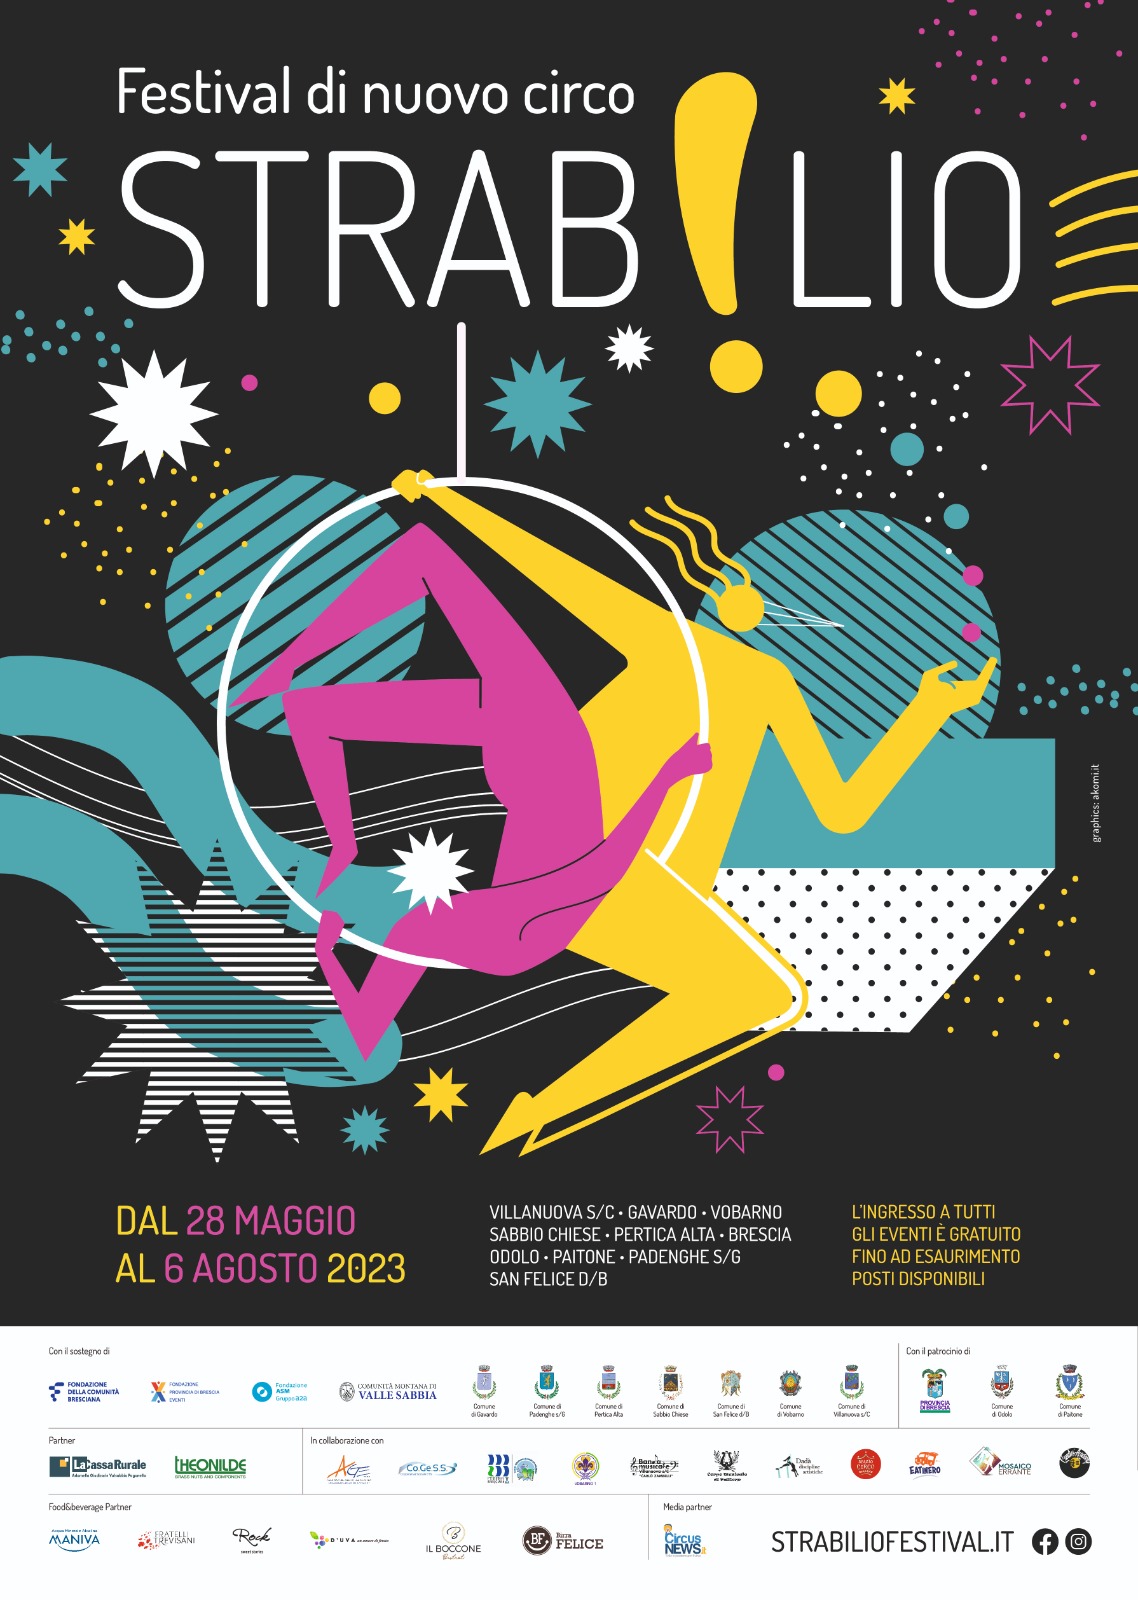 Torna “Strabilio”: il festival di nuovo circo a Brescia e provincia